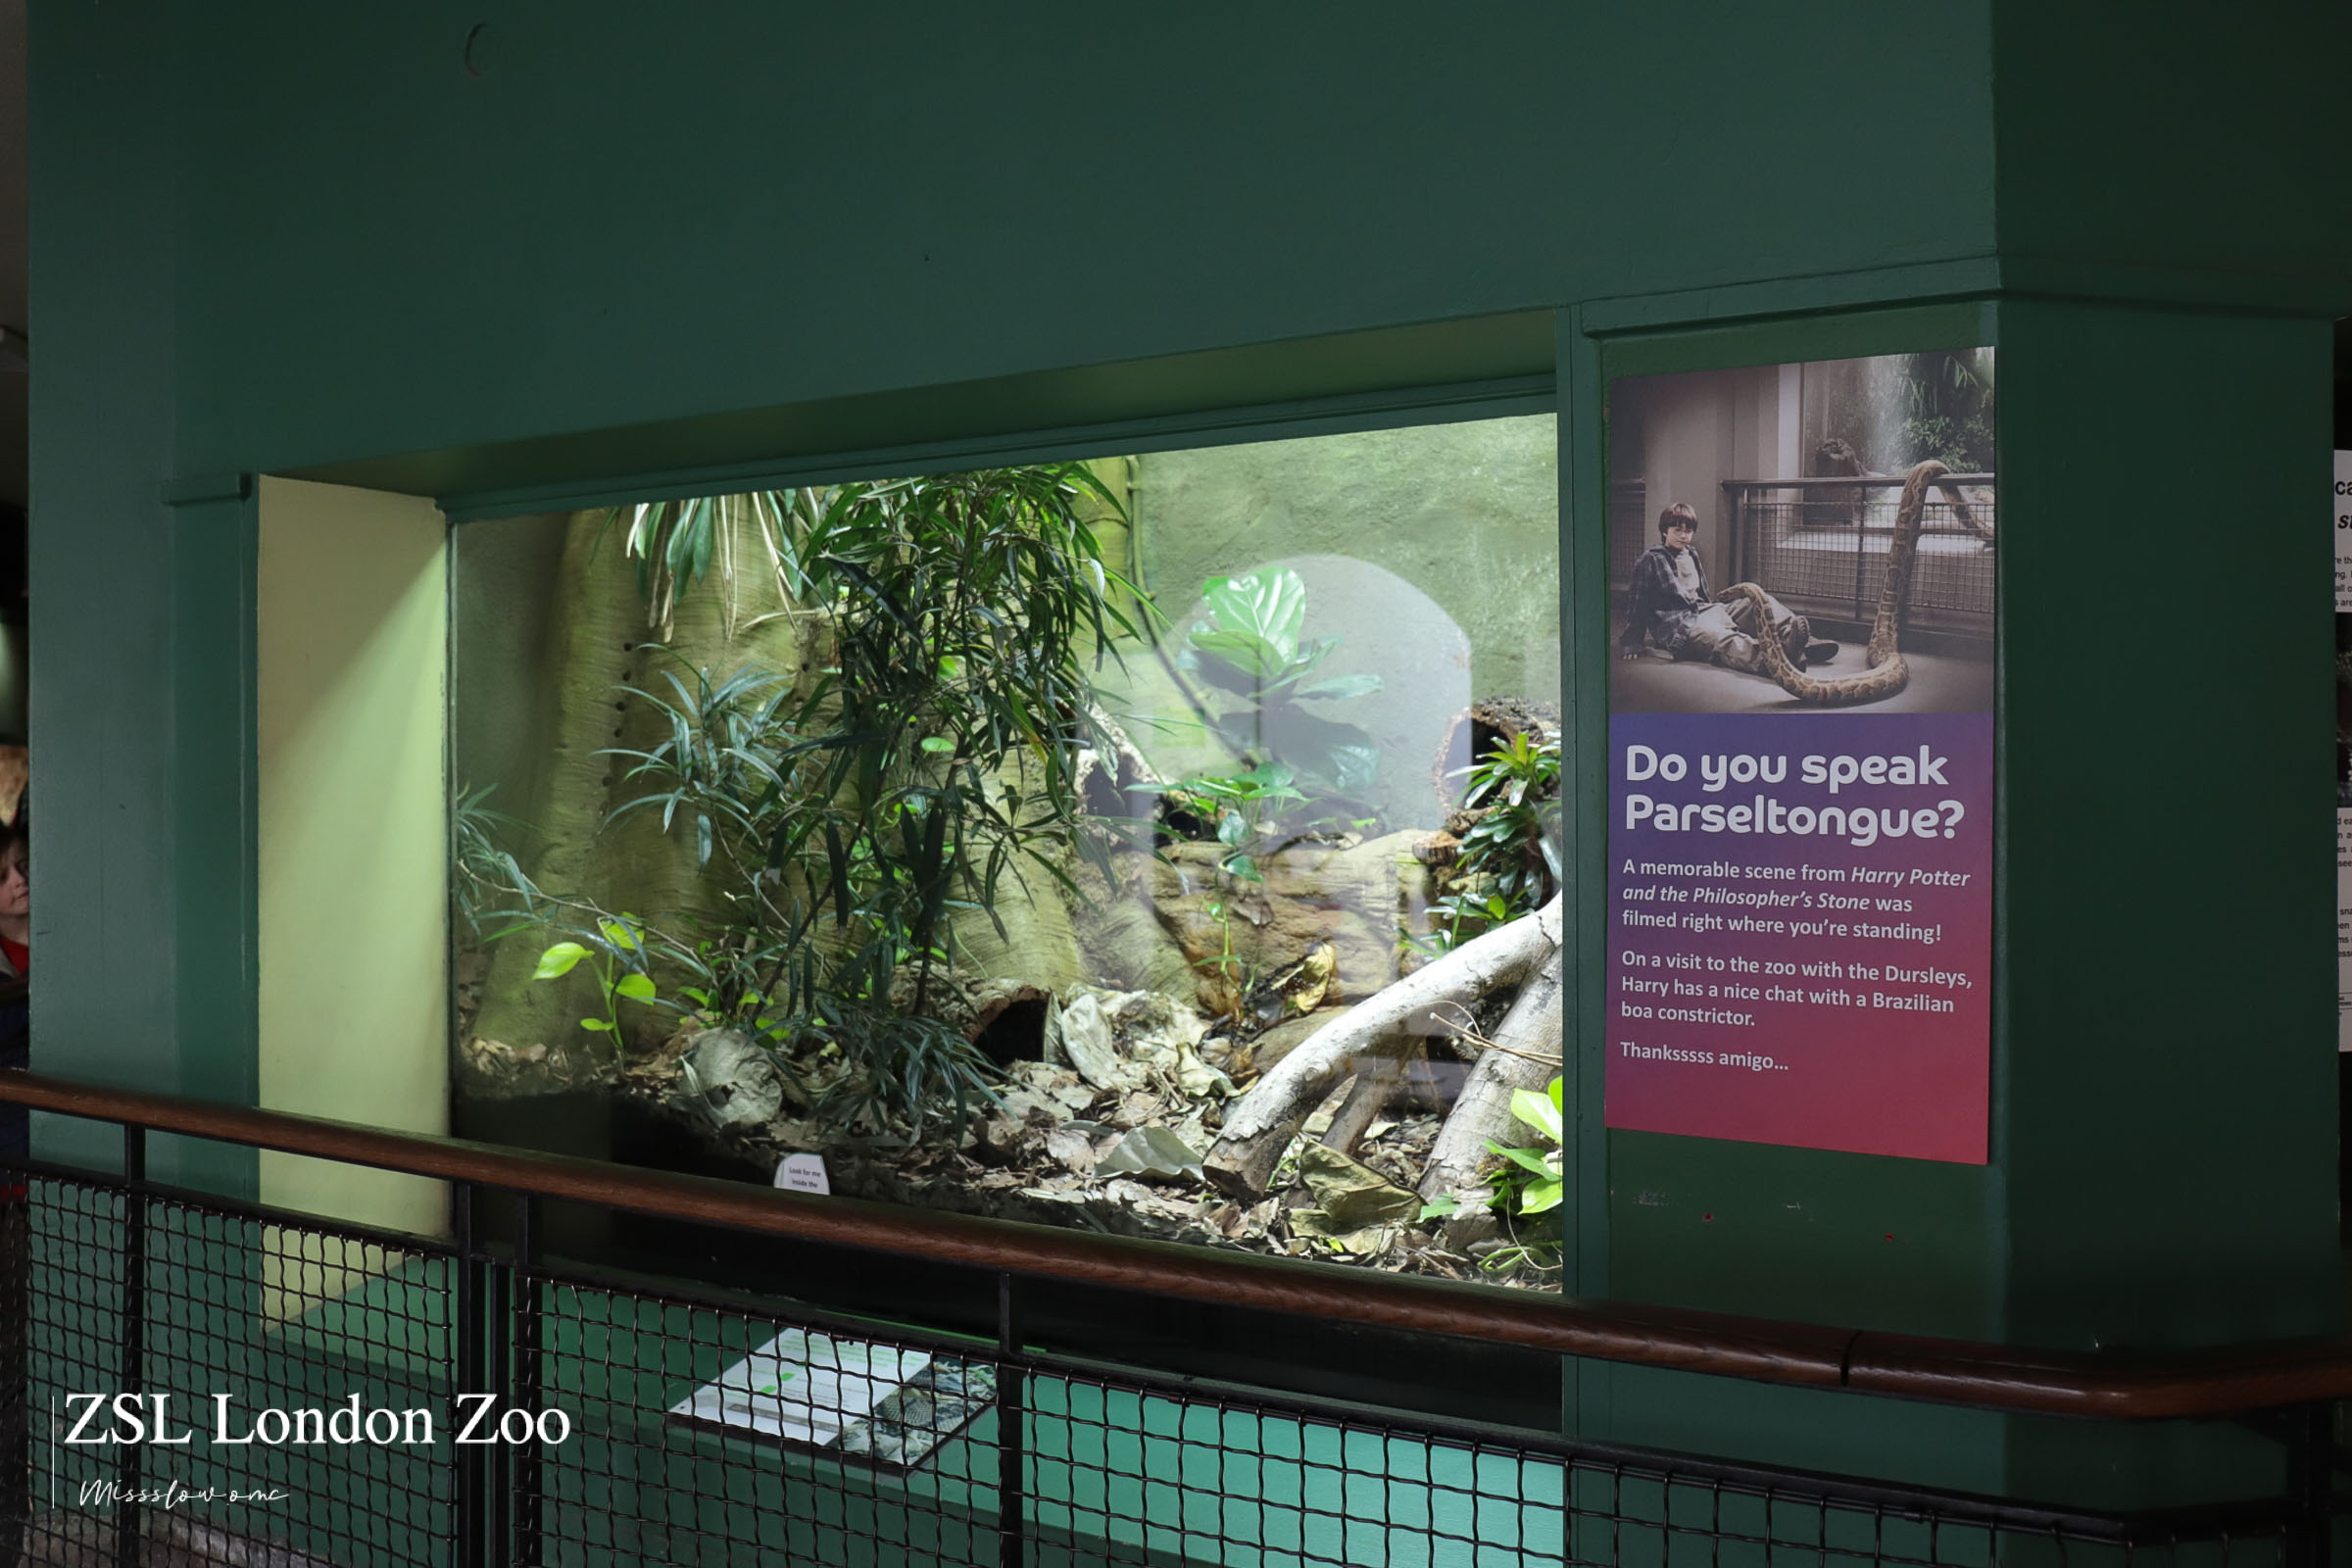 倫敦動物園-兩棲動物爬蟲館 Reptile House